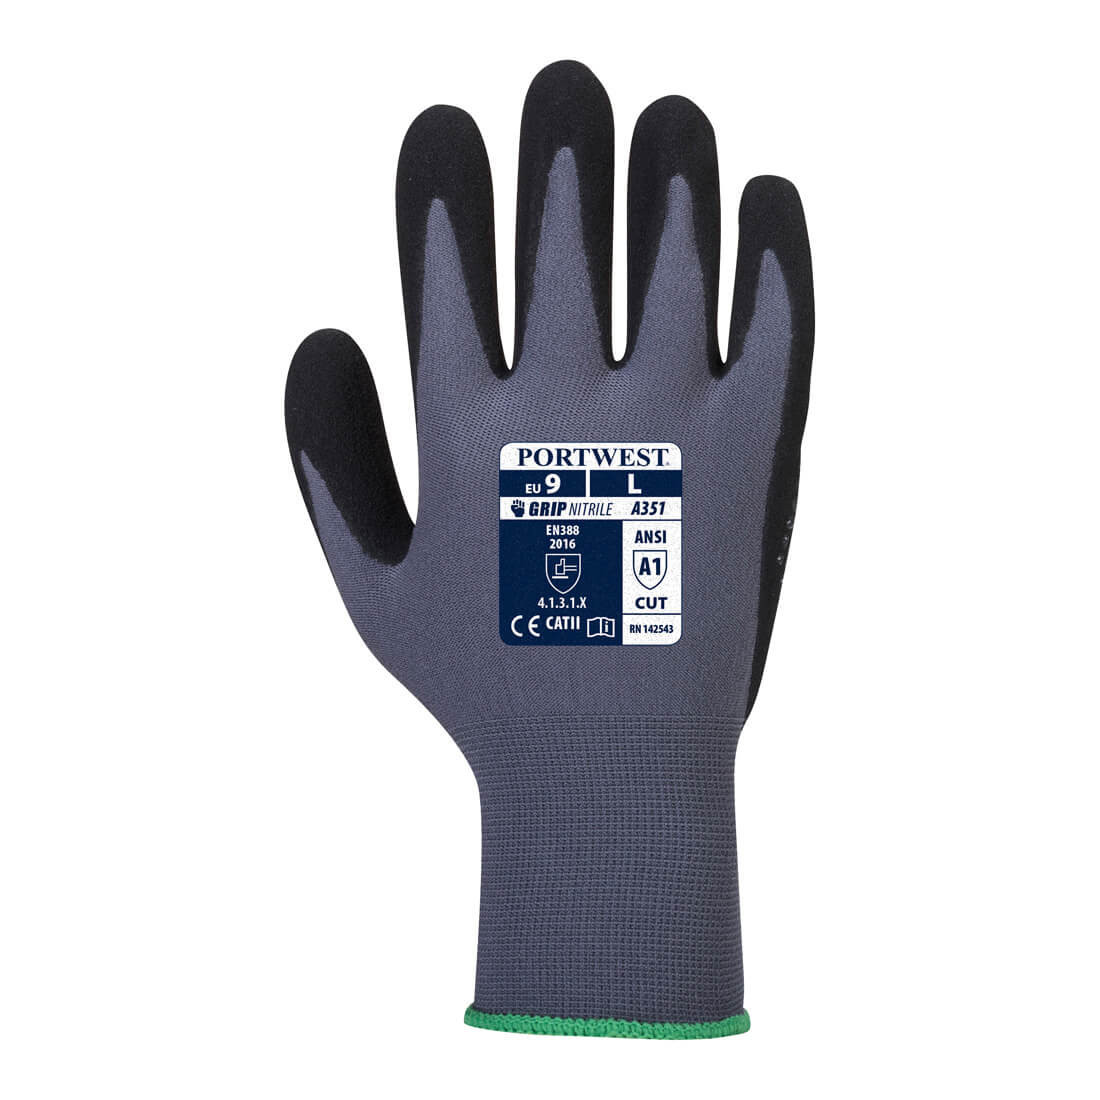 DermiFlex Plus Glove - Personal protection